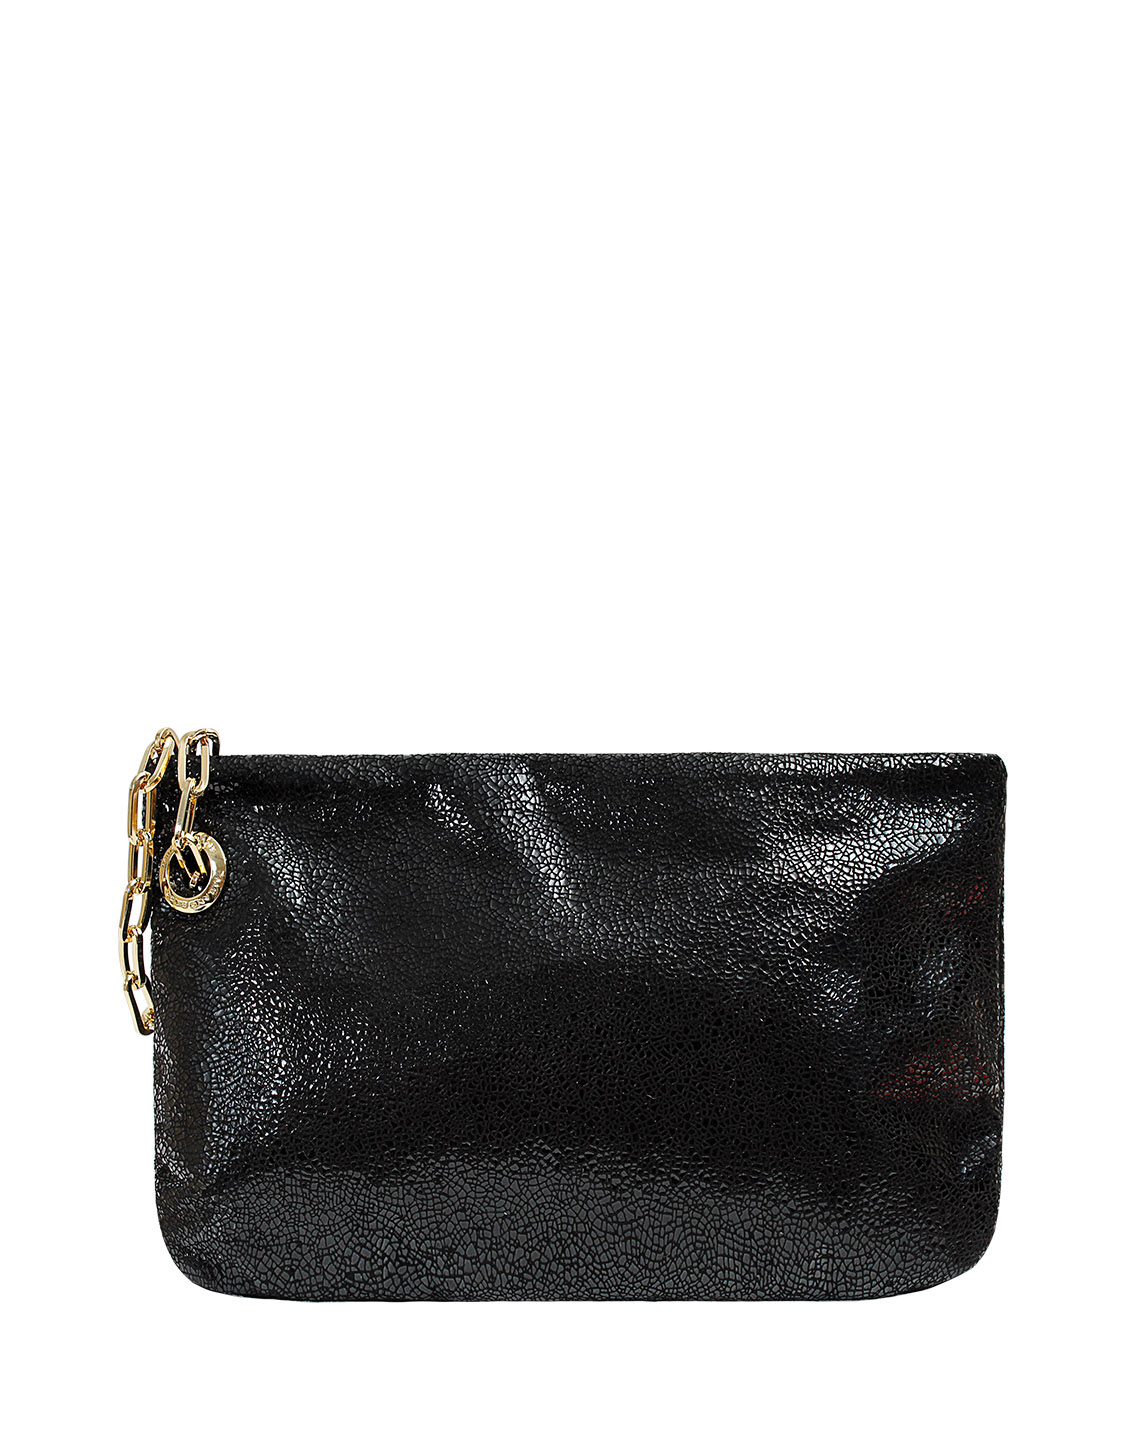 Carteras Clutch & Evening Bag DS-2799 Color Negro